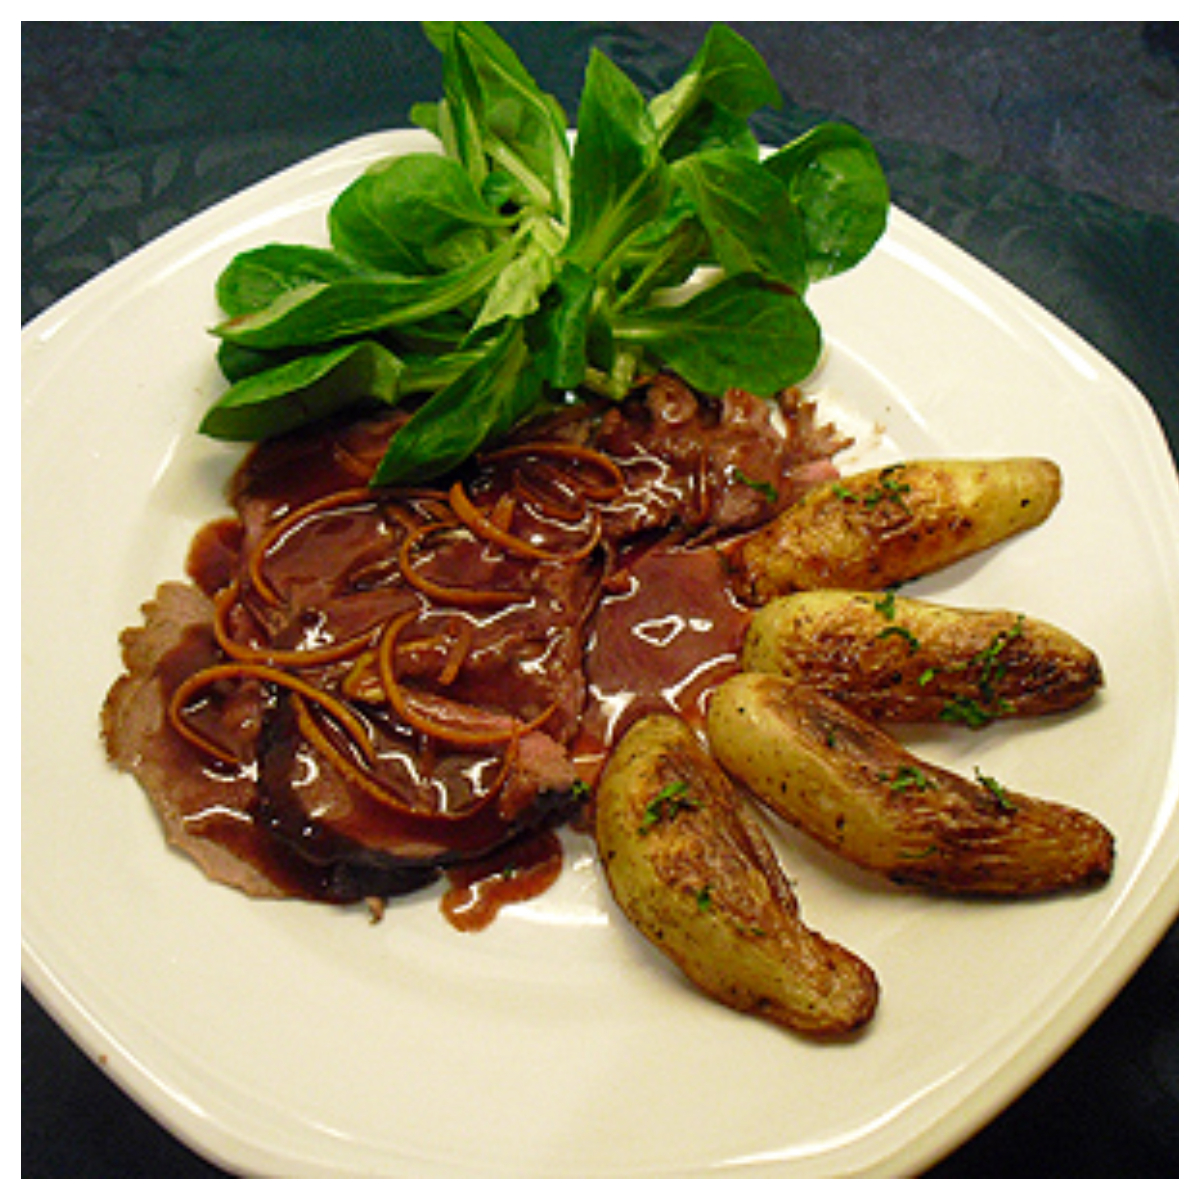 Chevreuil sauce grand veneur - La recette facile par Toqués 2 Cuisine